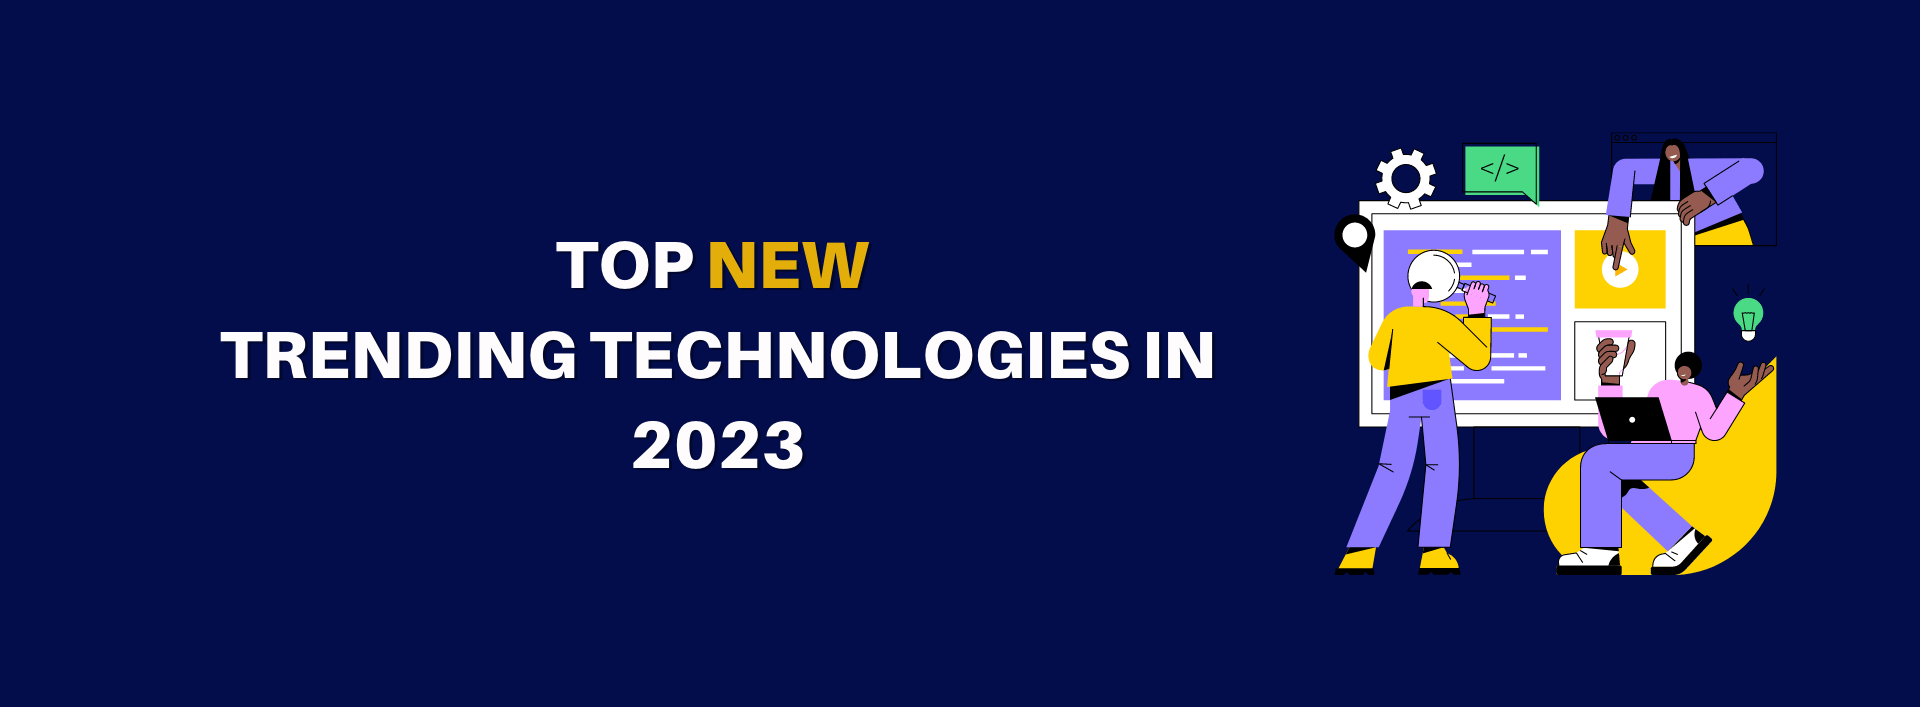 Top New Trending Technologies in 2023